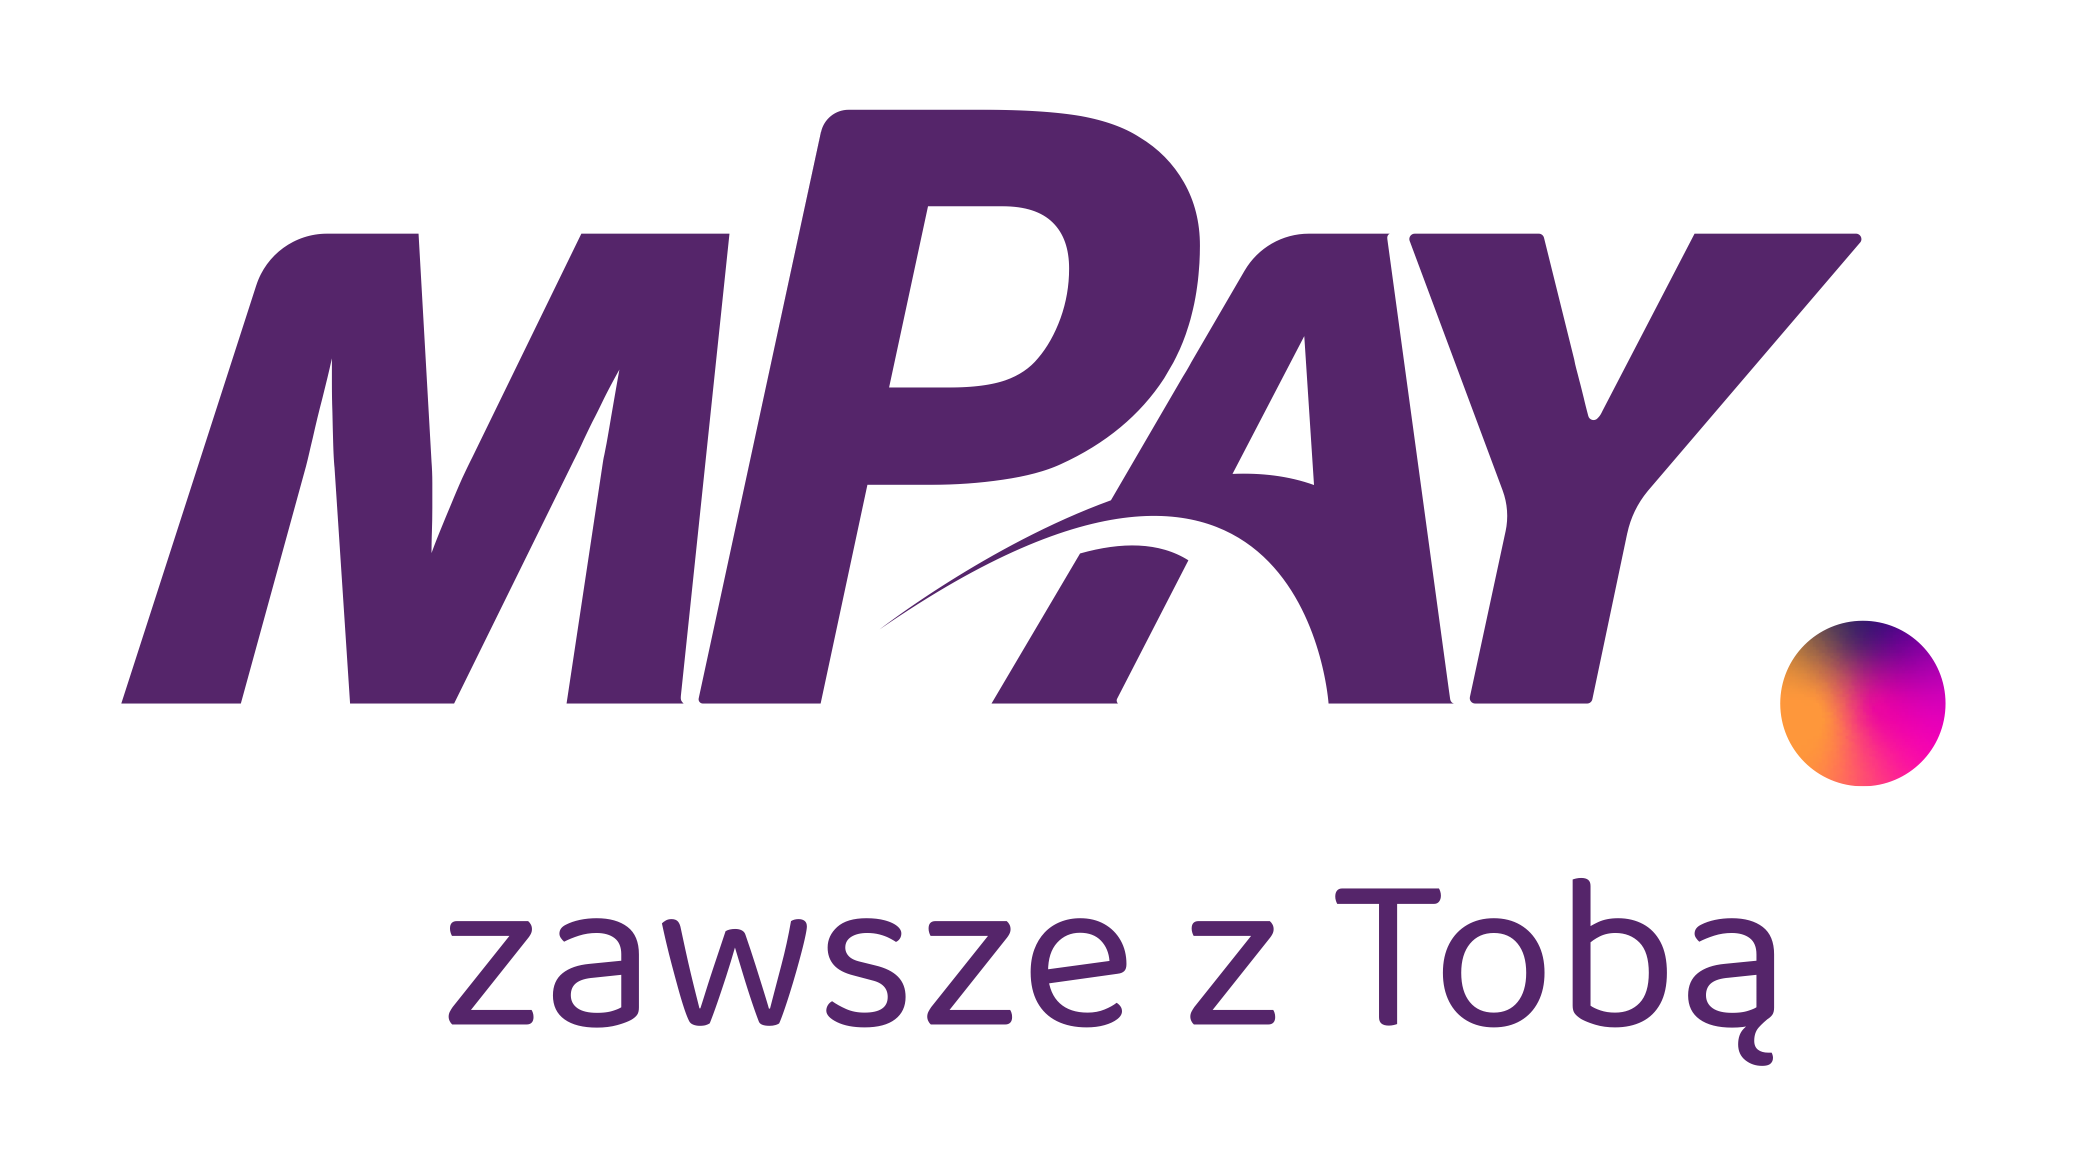 Wykaz akcjonariuszy posiadających co najmniej 5% liczby głosów na Zwyczajnym Walnym Zgromadzaniu Akcjonariuszy spółki mPay S.A. z siedzibą w Warszawie, które odbyło się 14 maja 2019 roku - mPay płatności mobilne